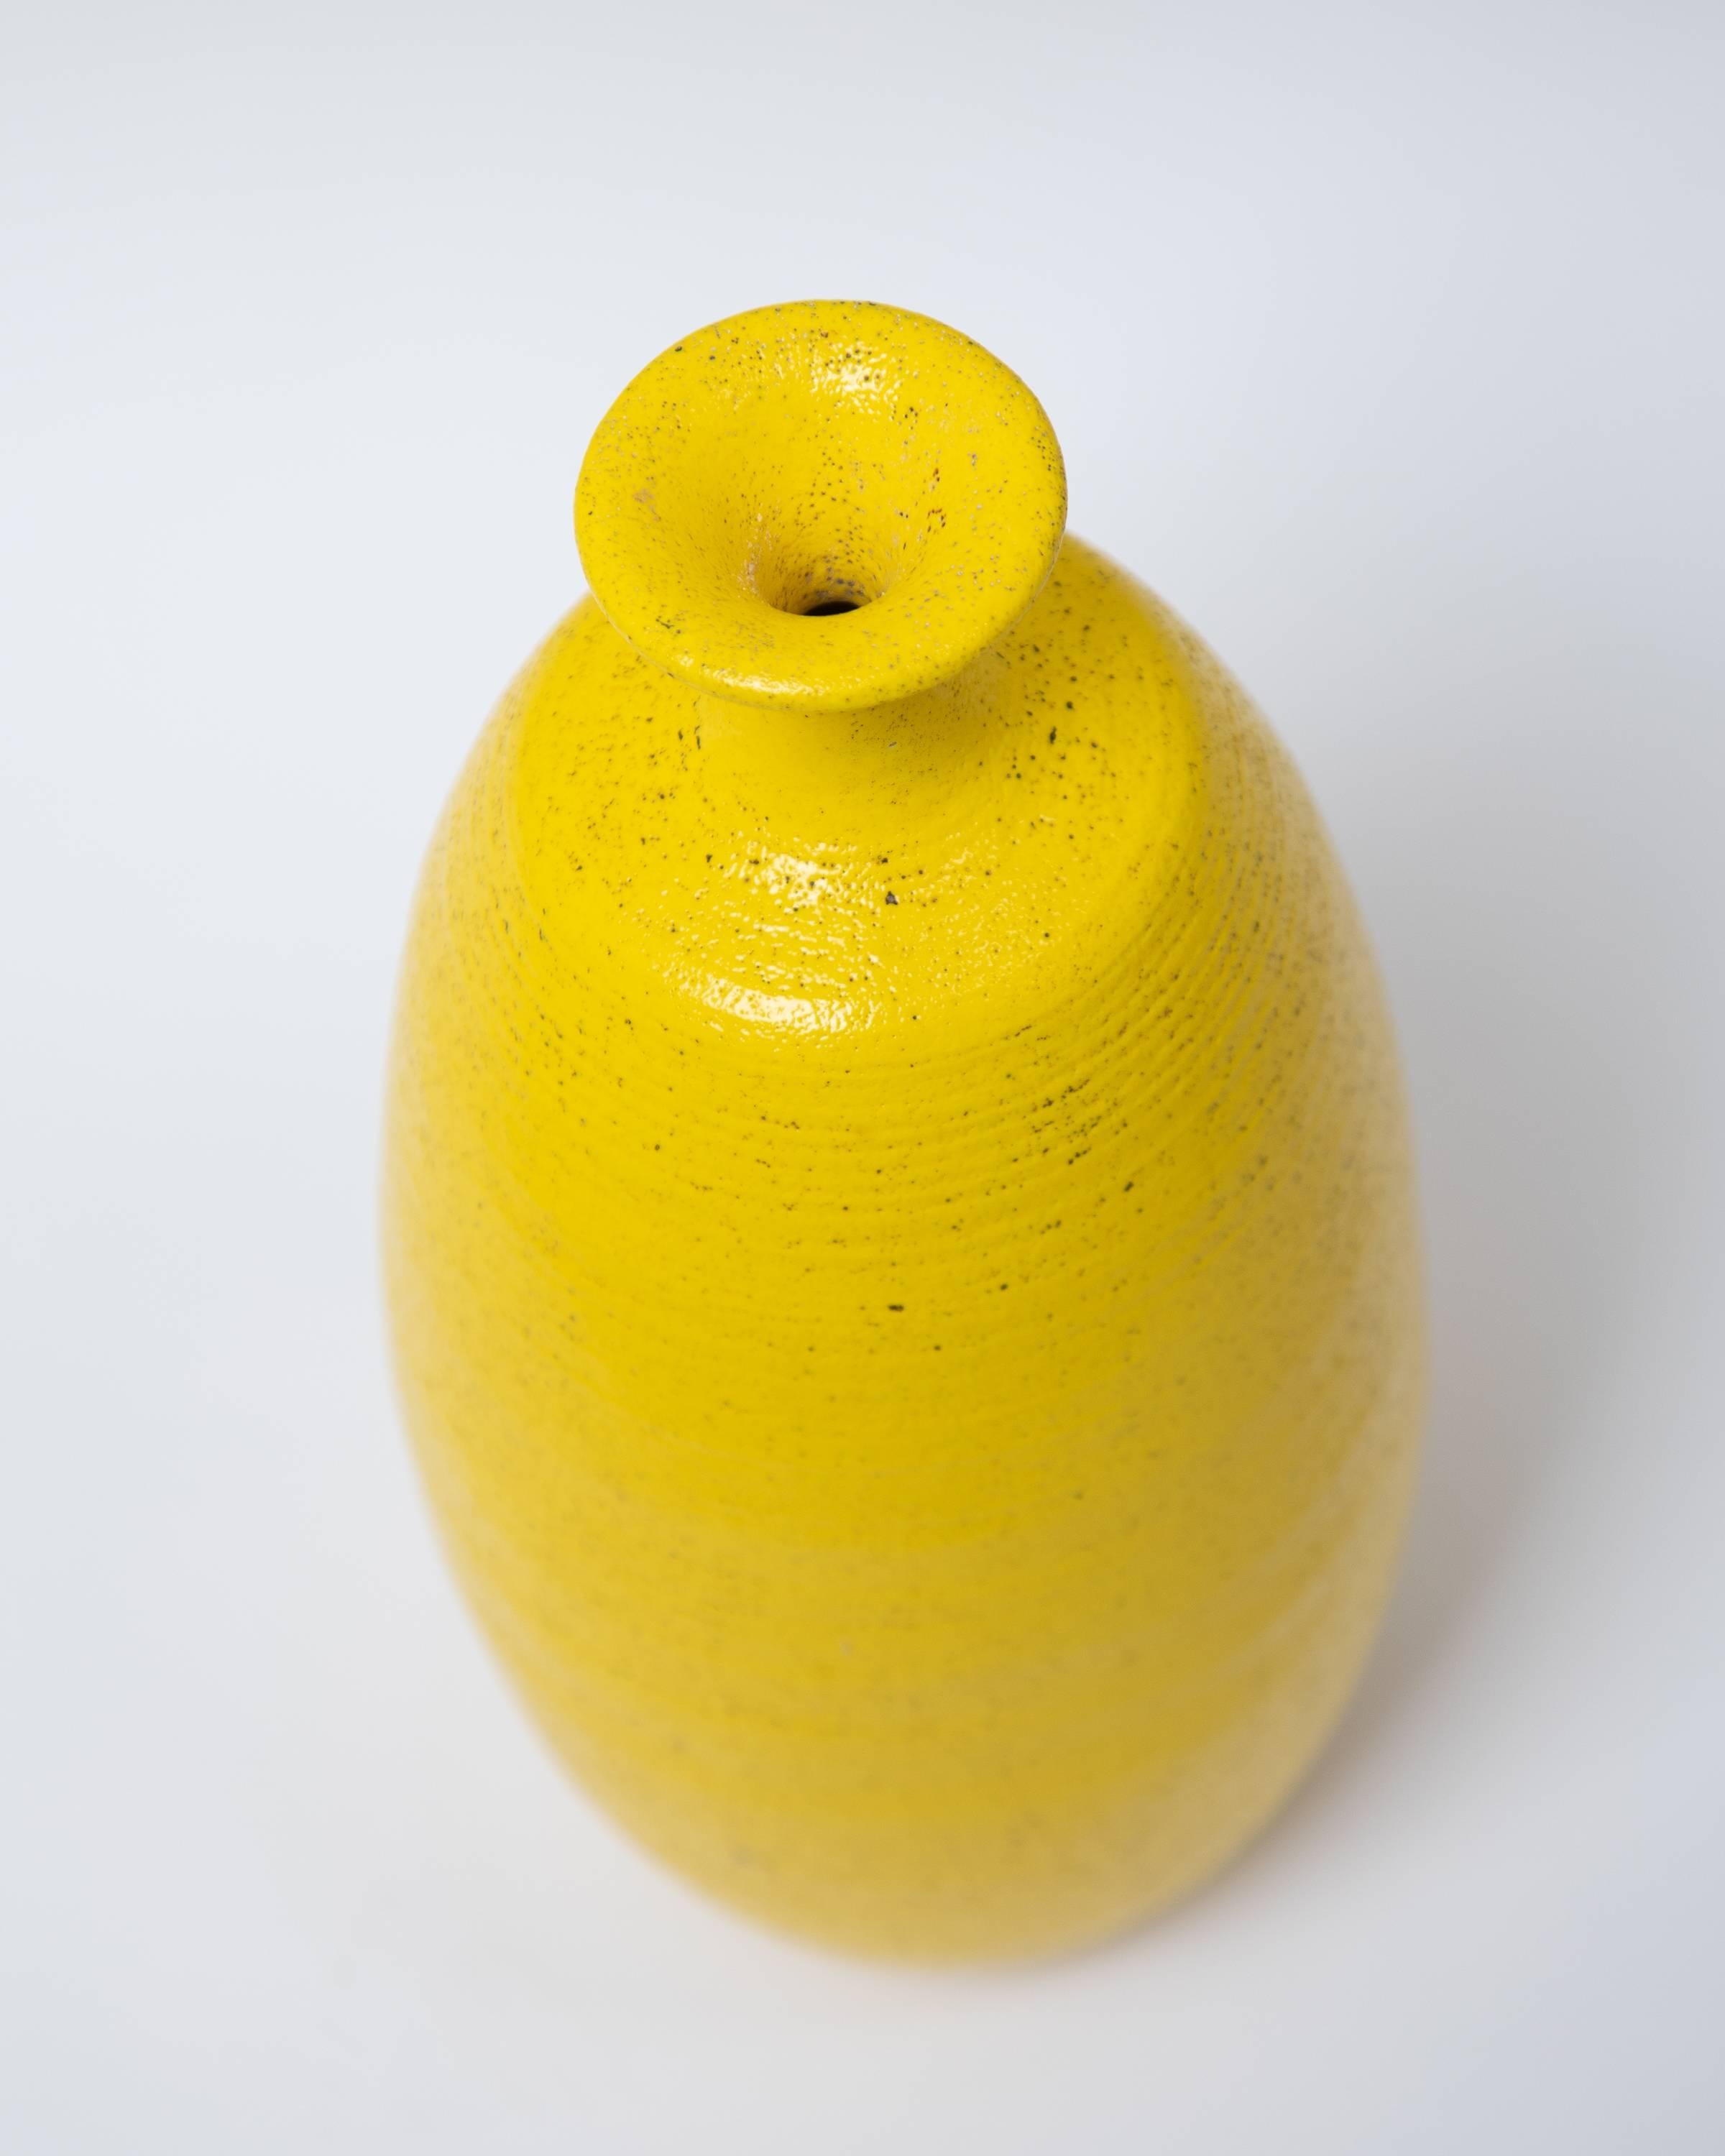 Handgefertigte Flaschenvase aus Keramik mit gelber Glasur im Pop-Art-Stil, ca. 1960er Jahre.
Auf der Unterseite gestempelt USA.